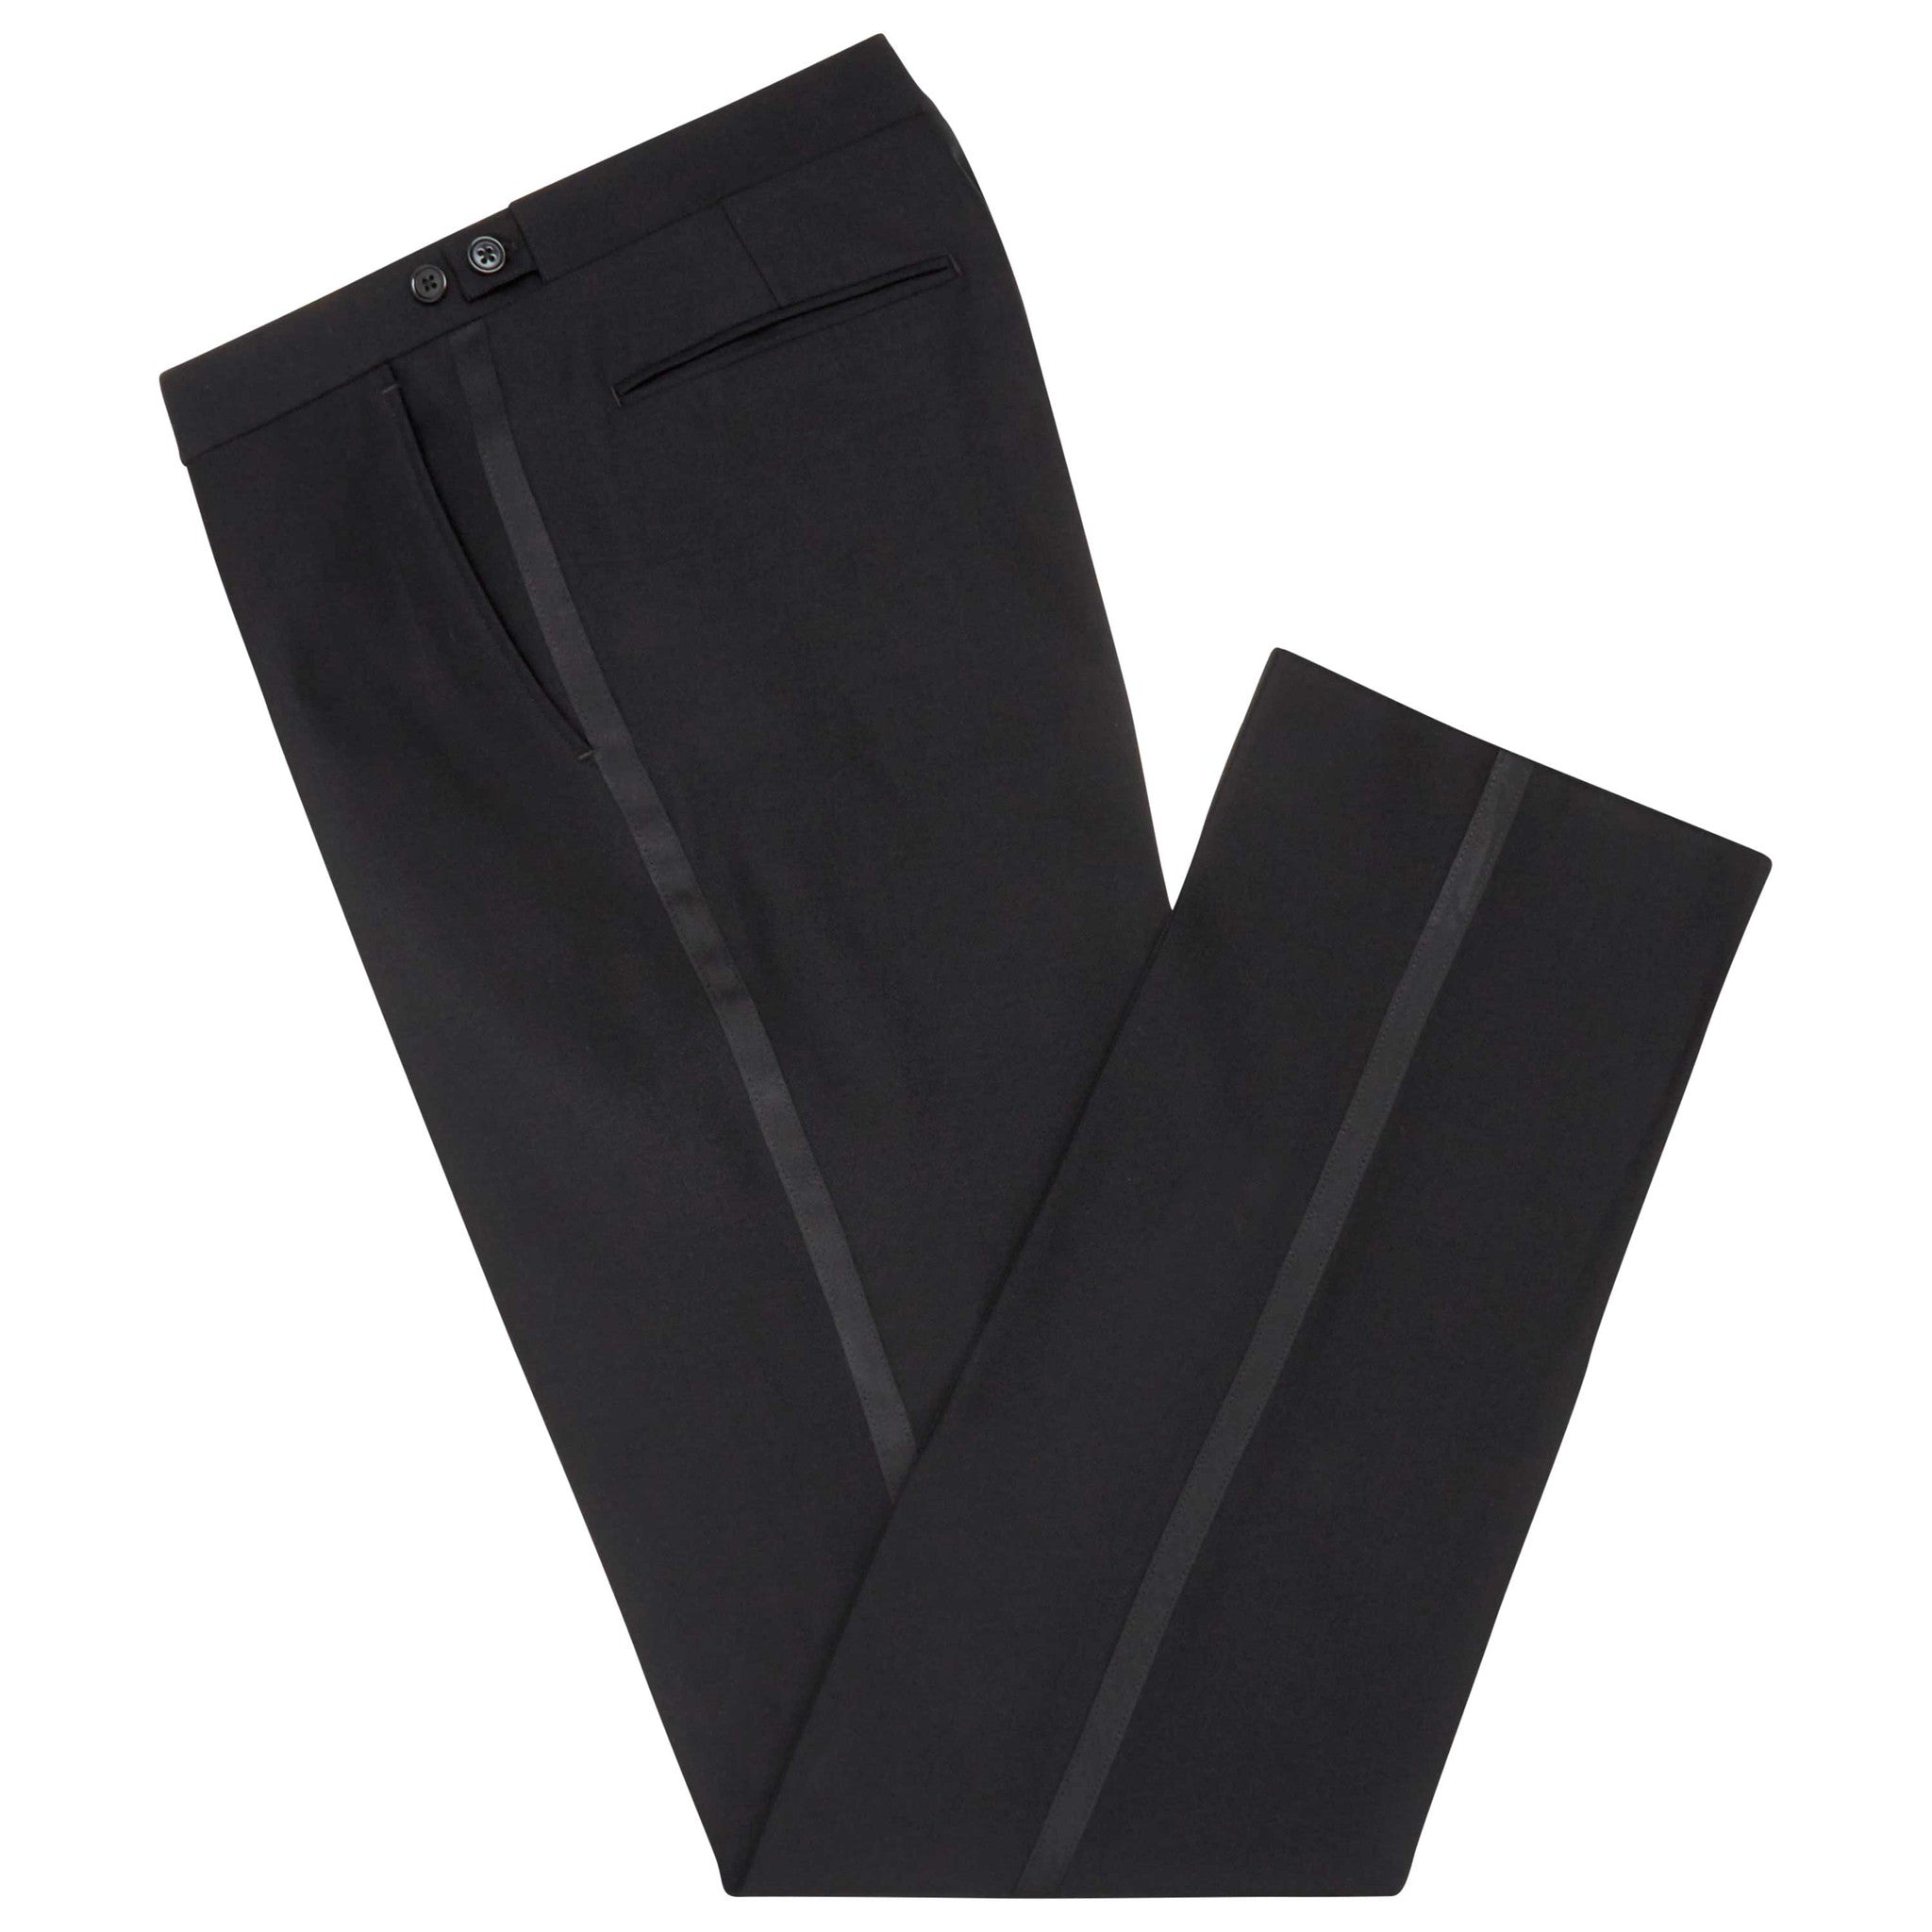 Ede & Ravenscroft - Ede & Ravenscroft | Twaine dress trousers | Black